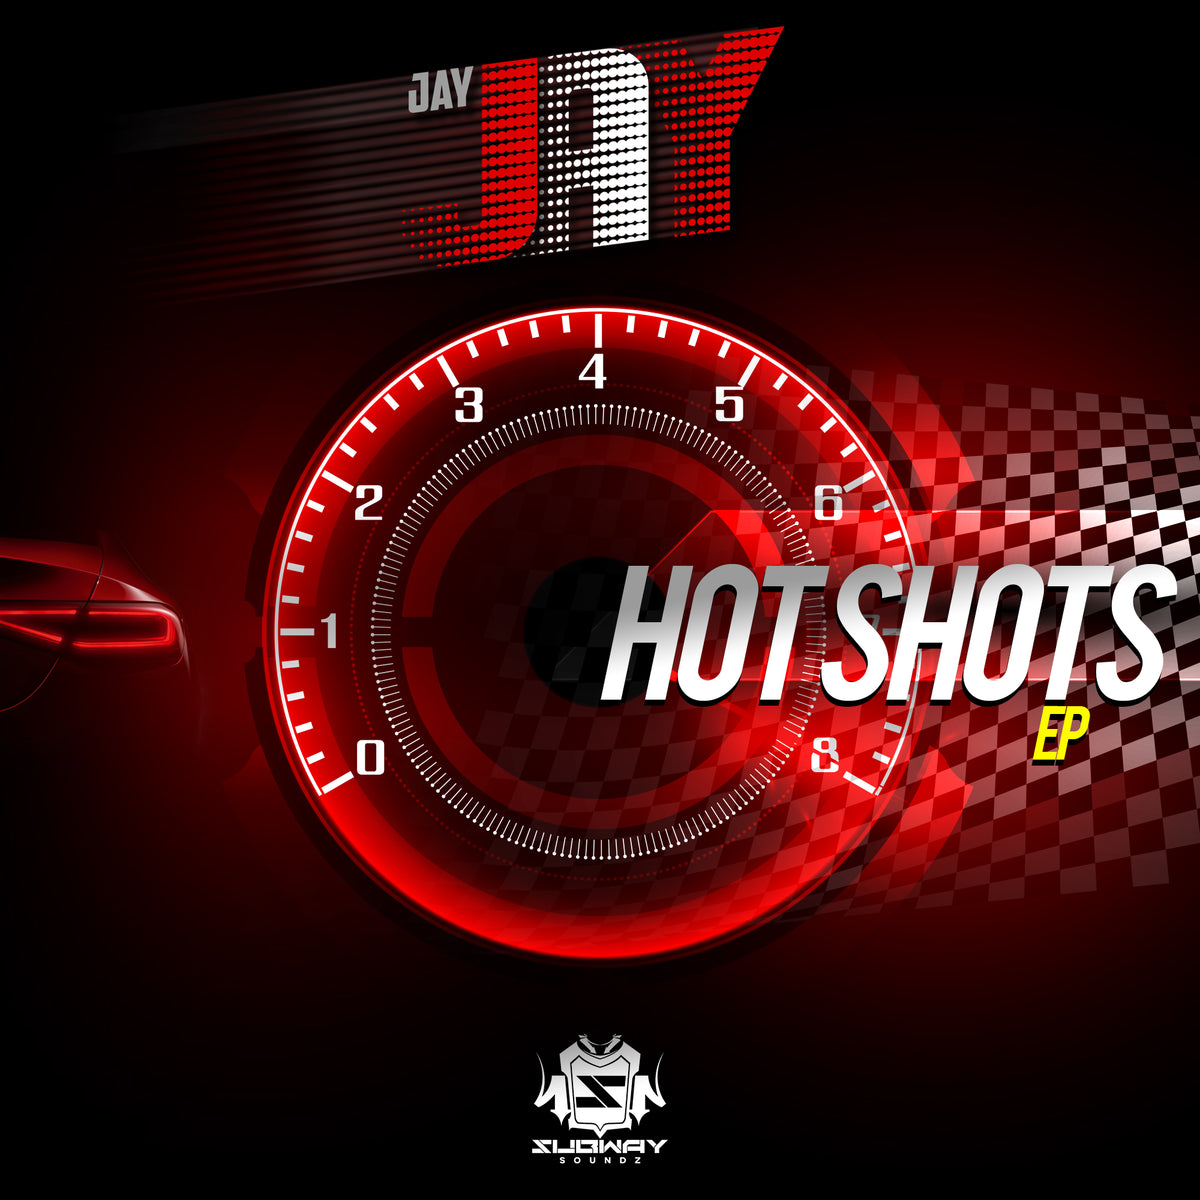 SSLD 088 - Jay Jay 'Hotshots EP'